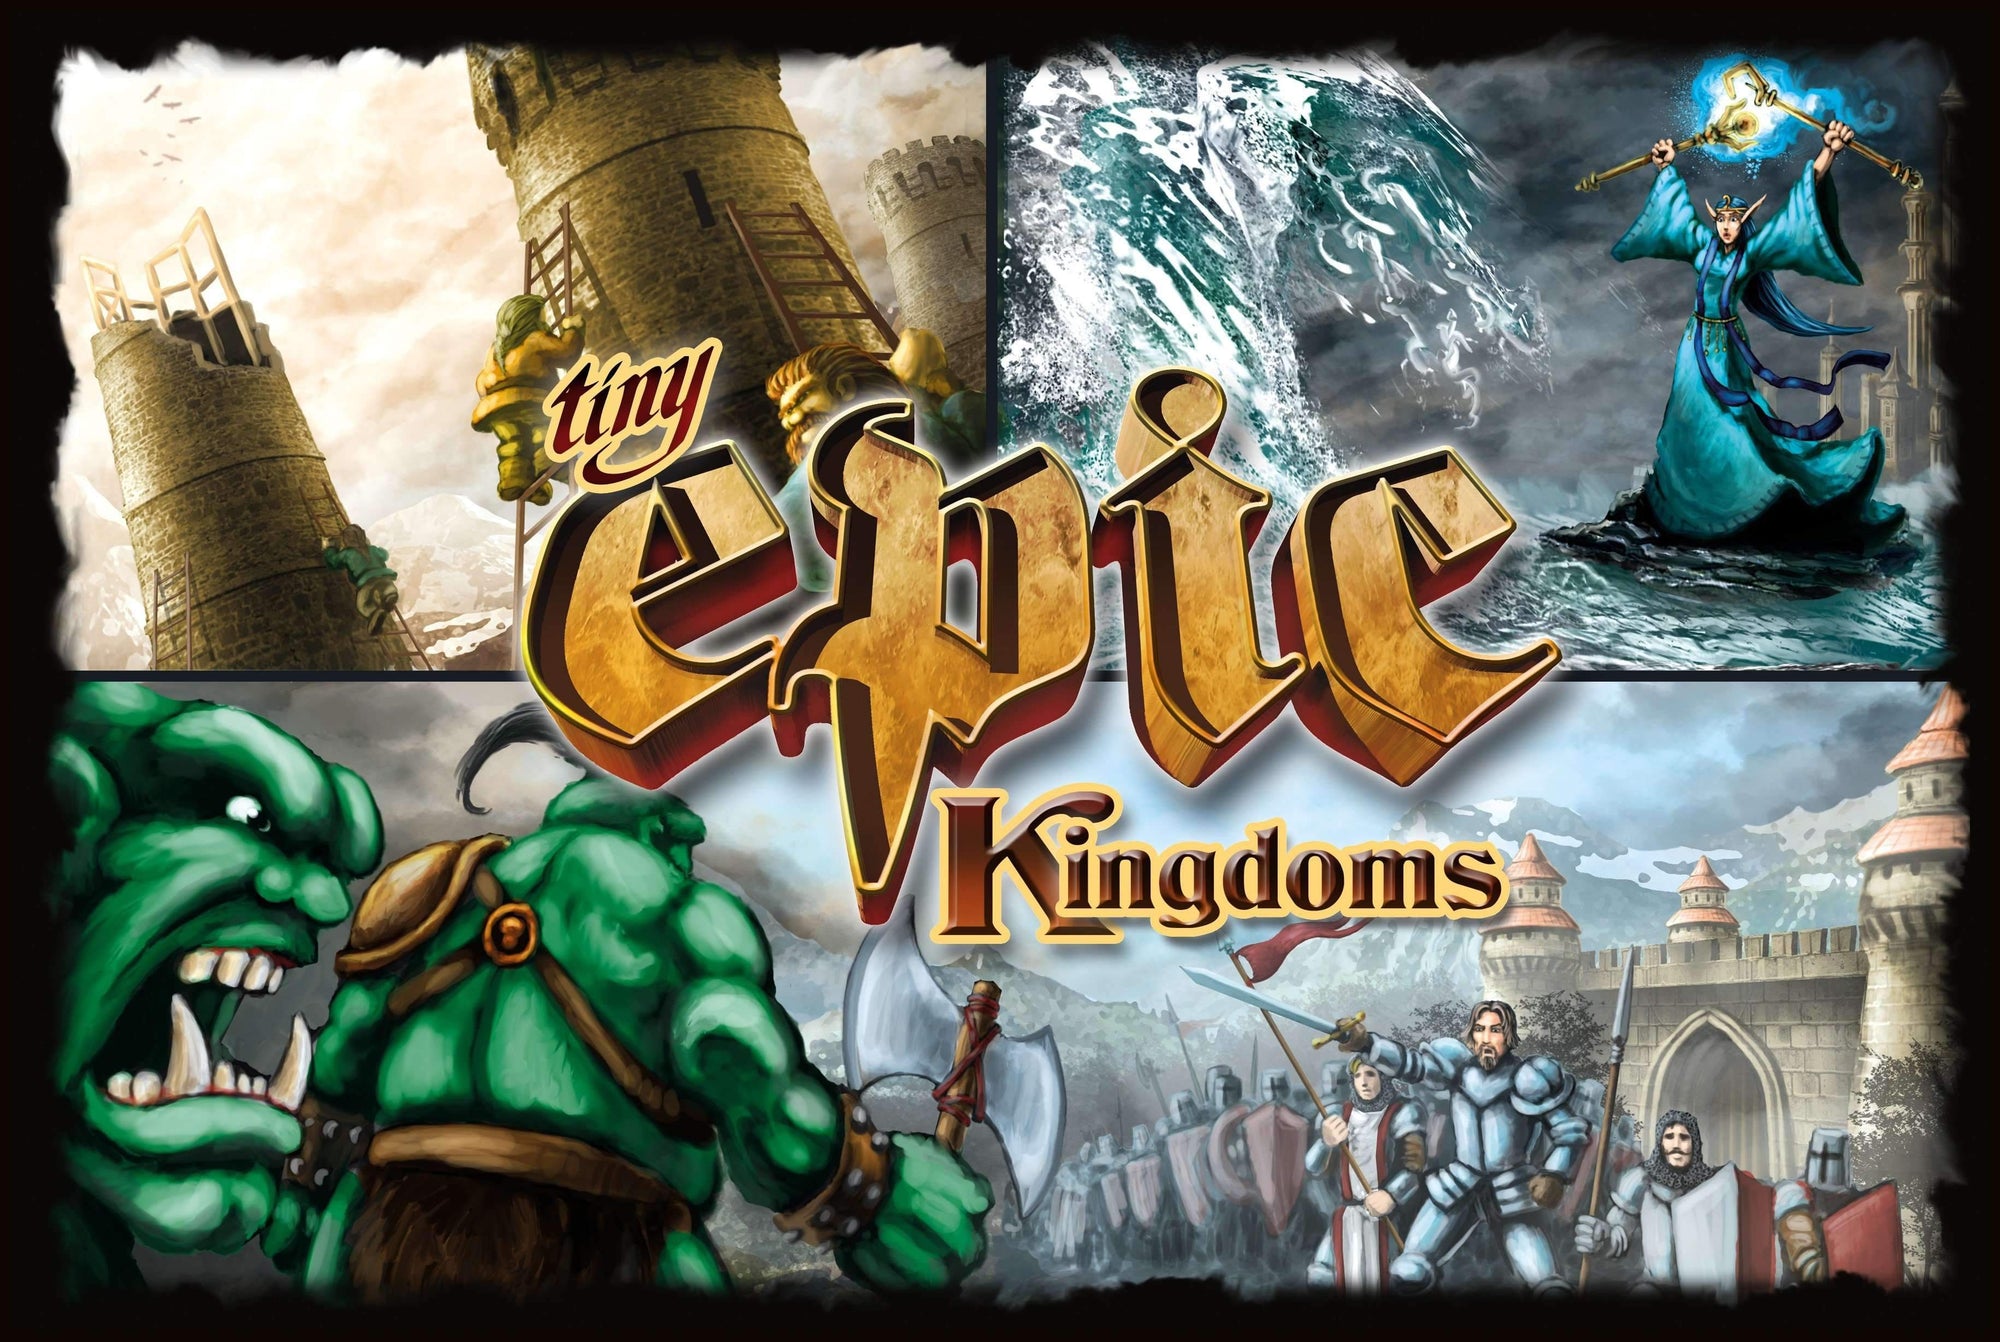 משחק לוח הממלכות האפי הזעיר המהדורה השנייה (Kickstarter Special) Gamelyn Games